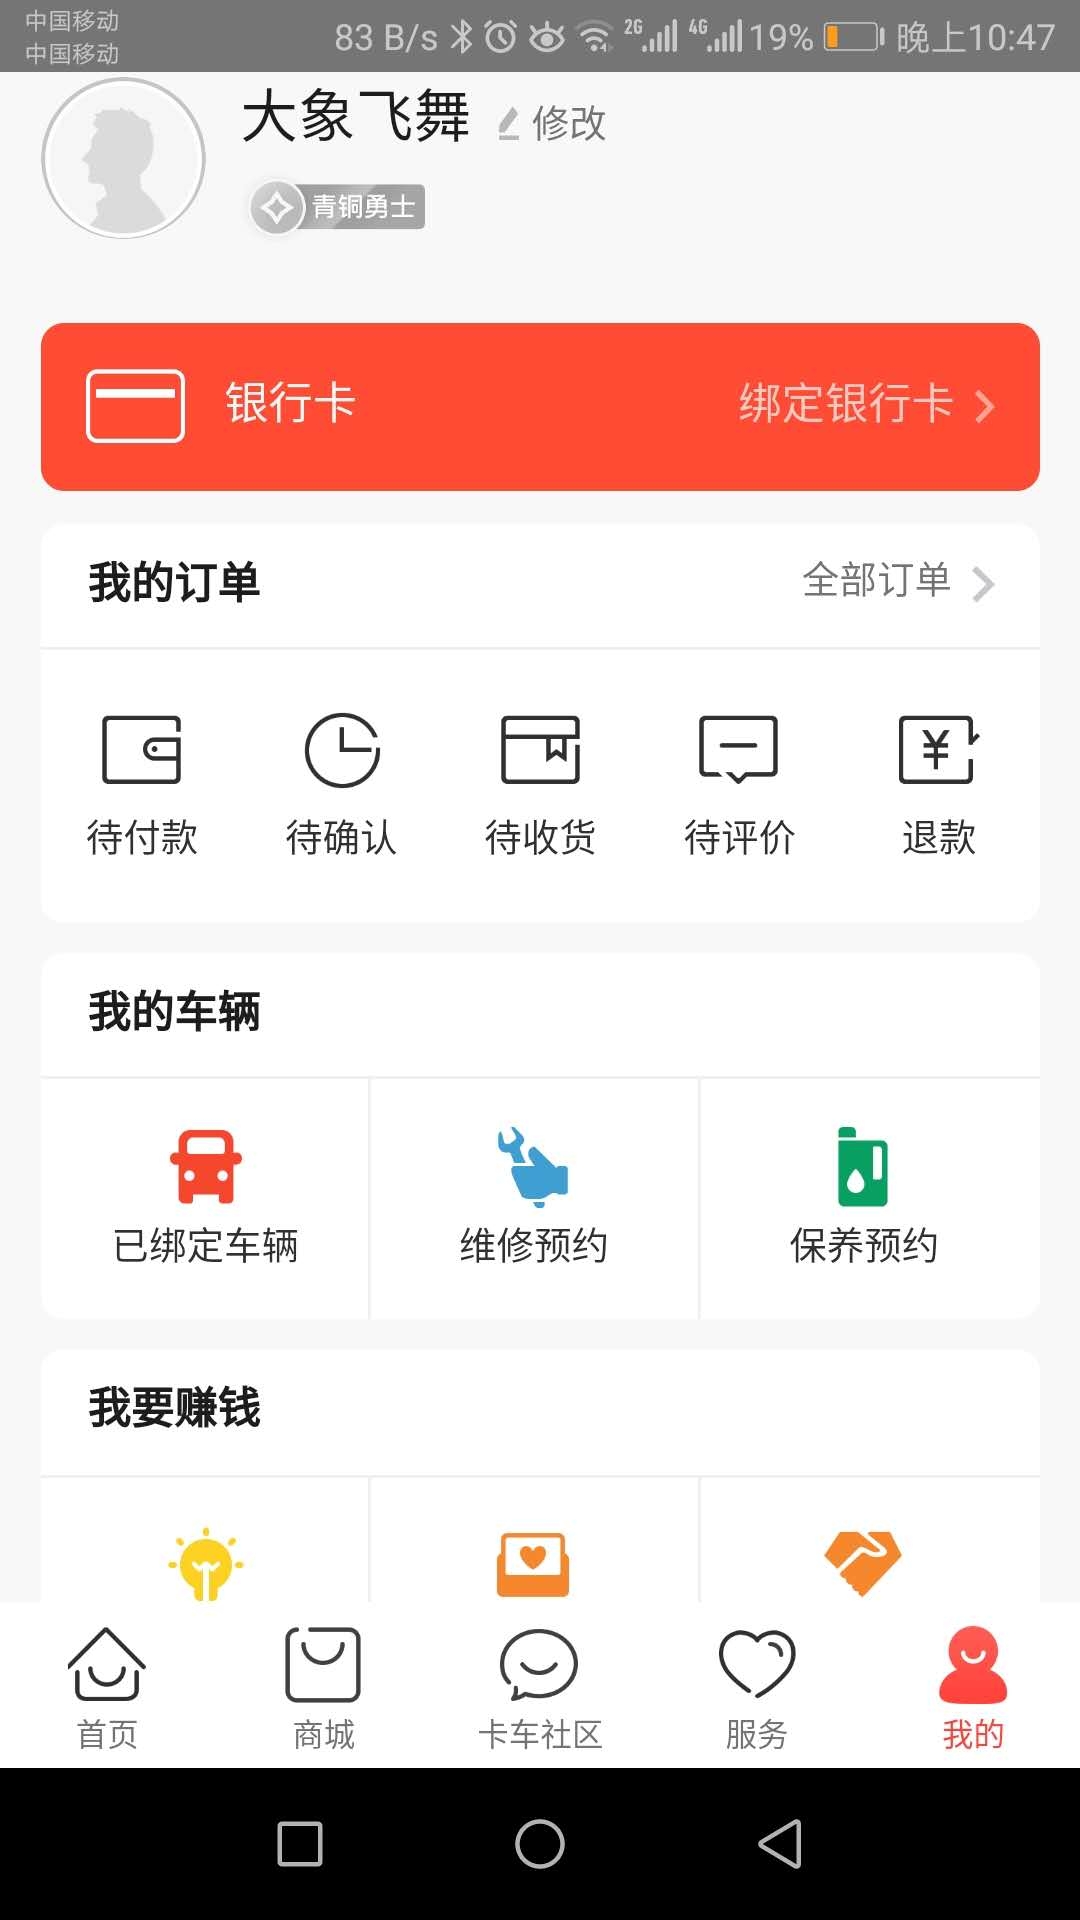 三一卡车app(图文)